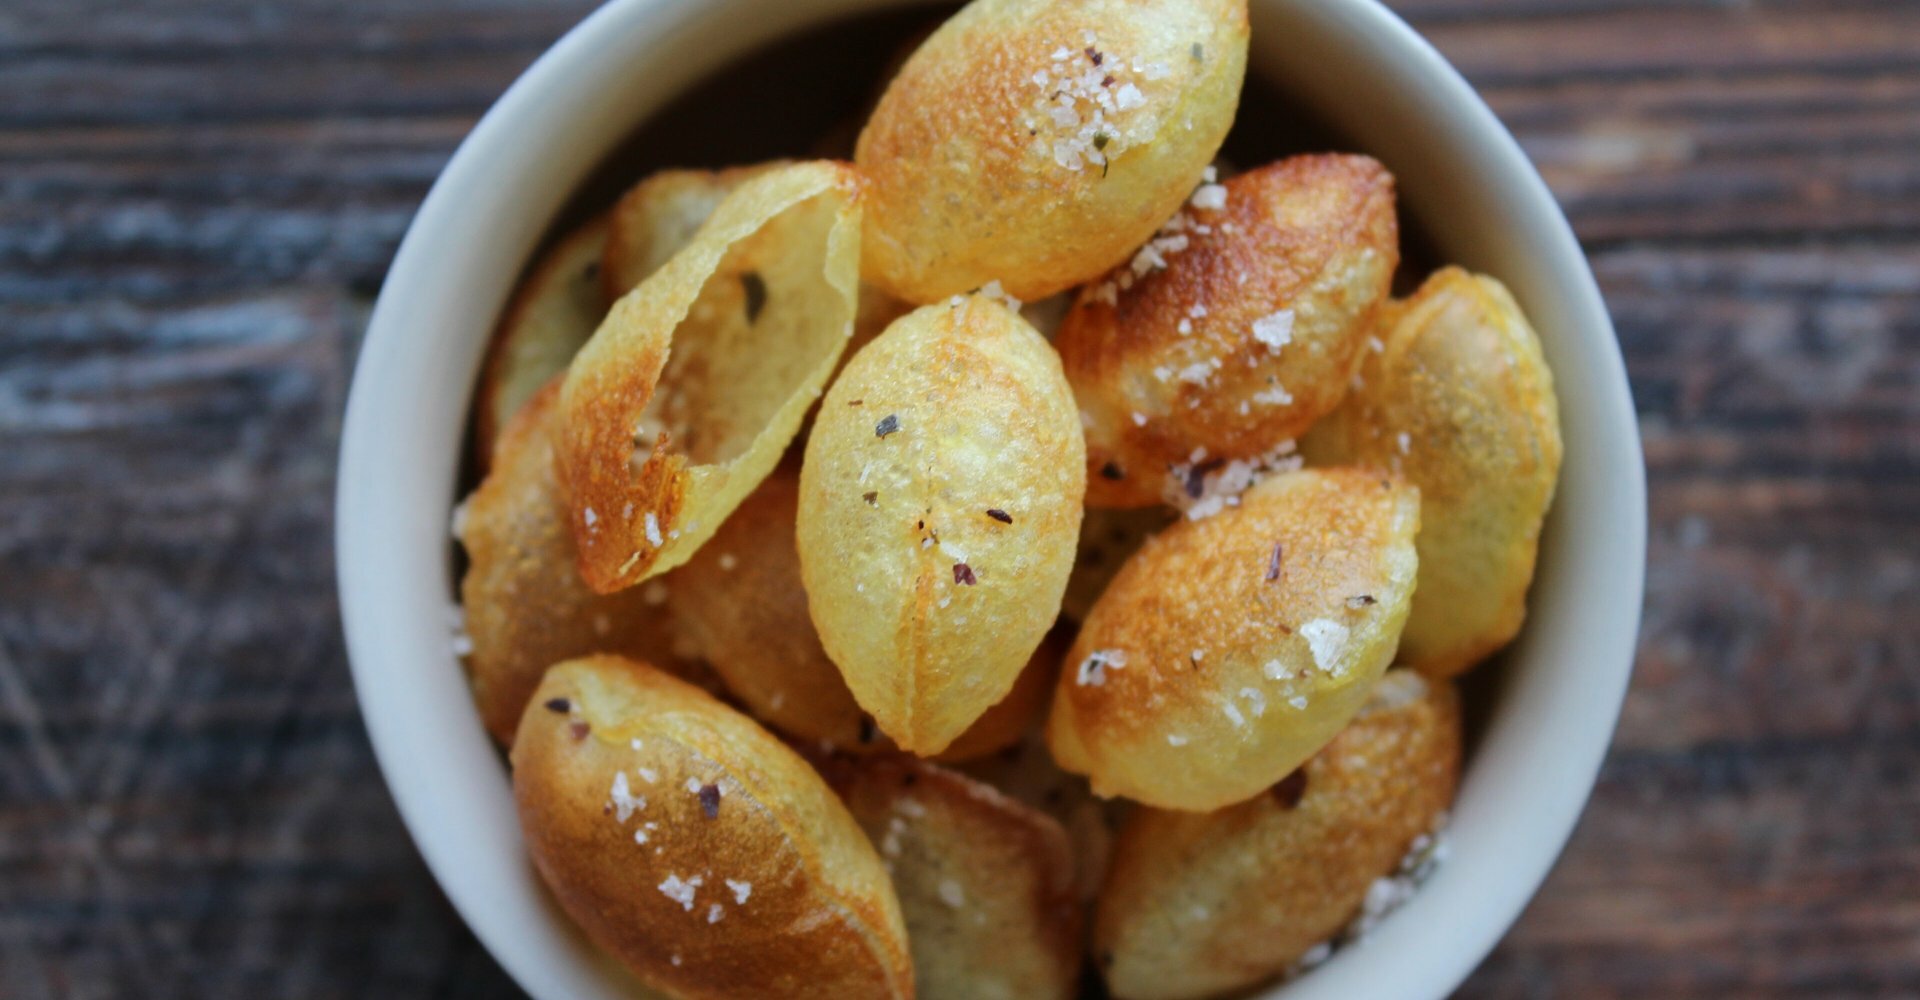 Pommes souffle soufflerede pommes frites - Mandekogebogen